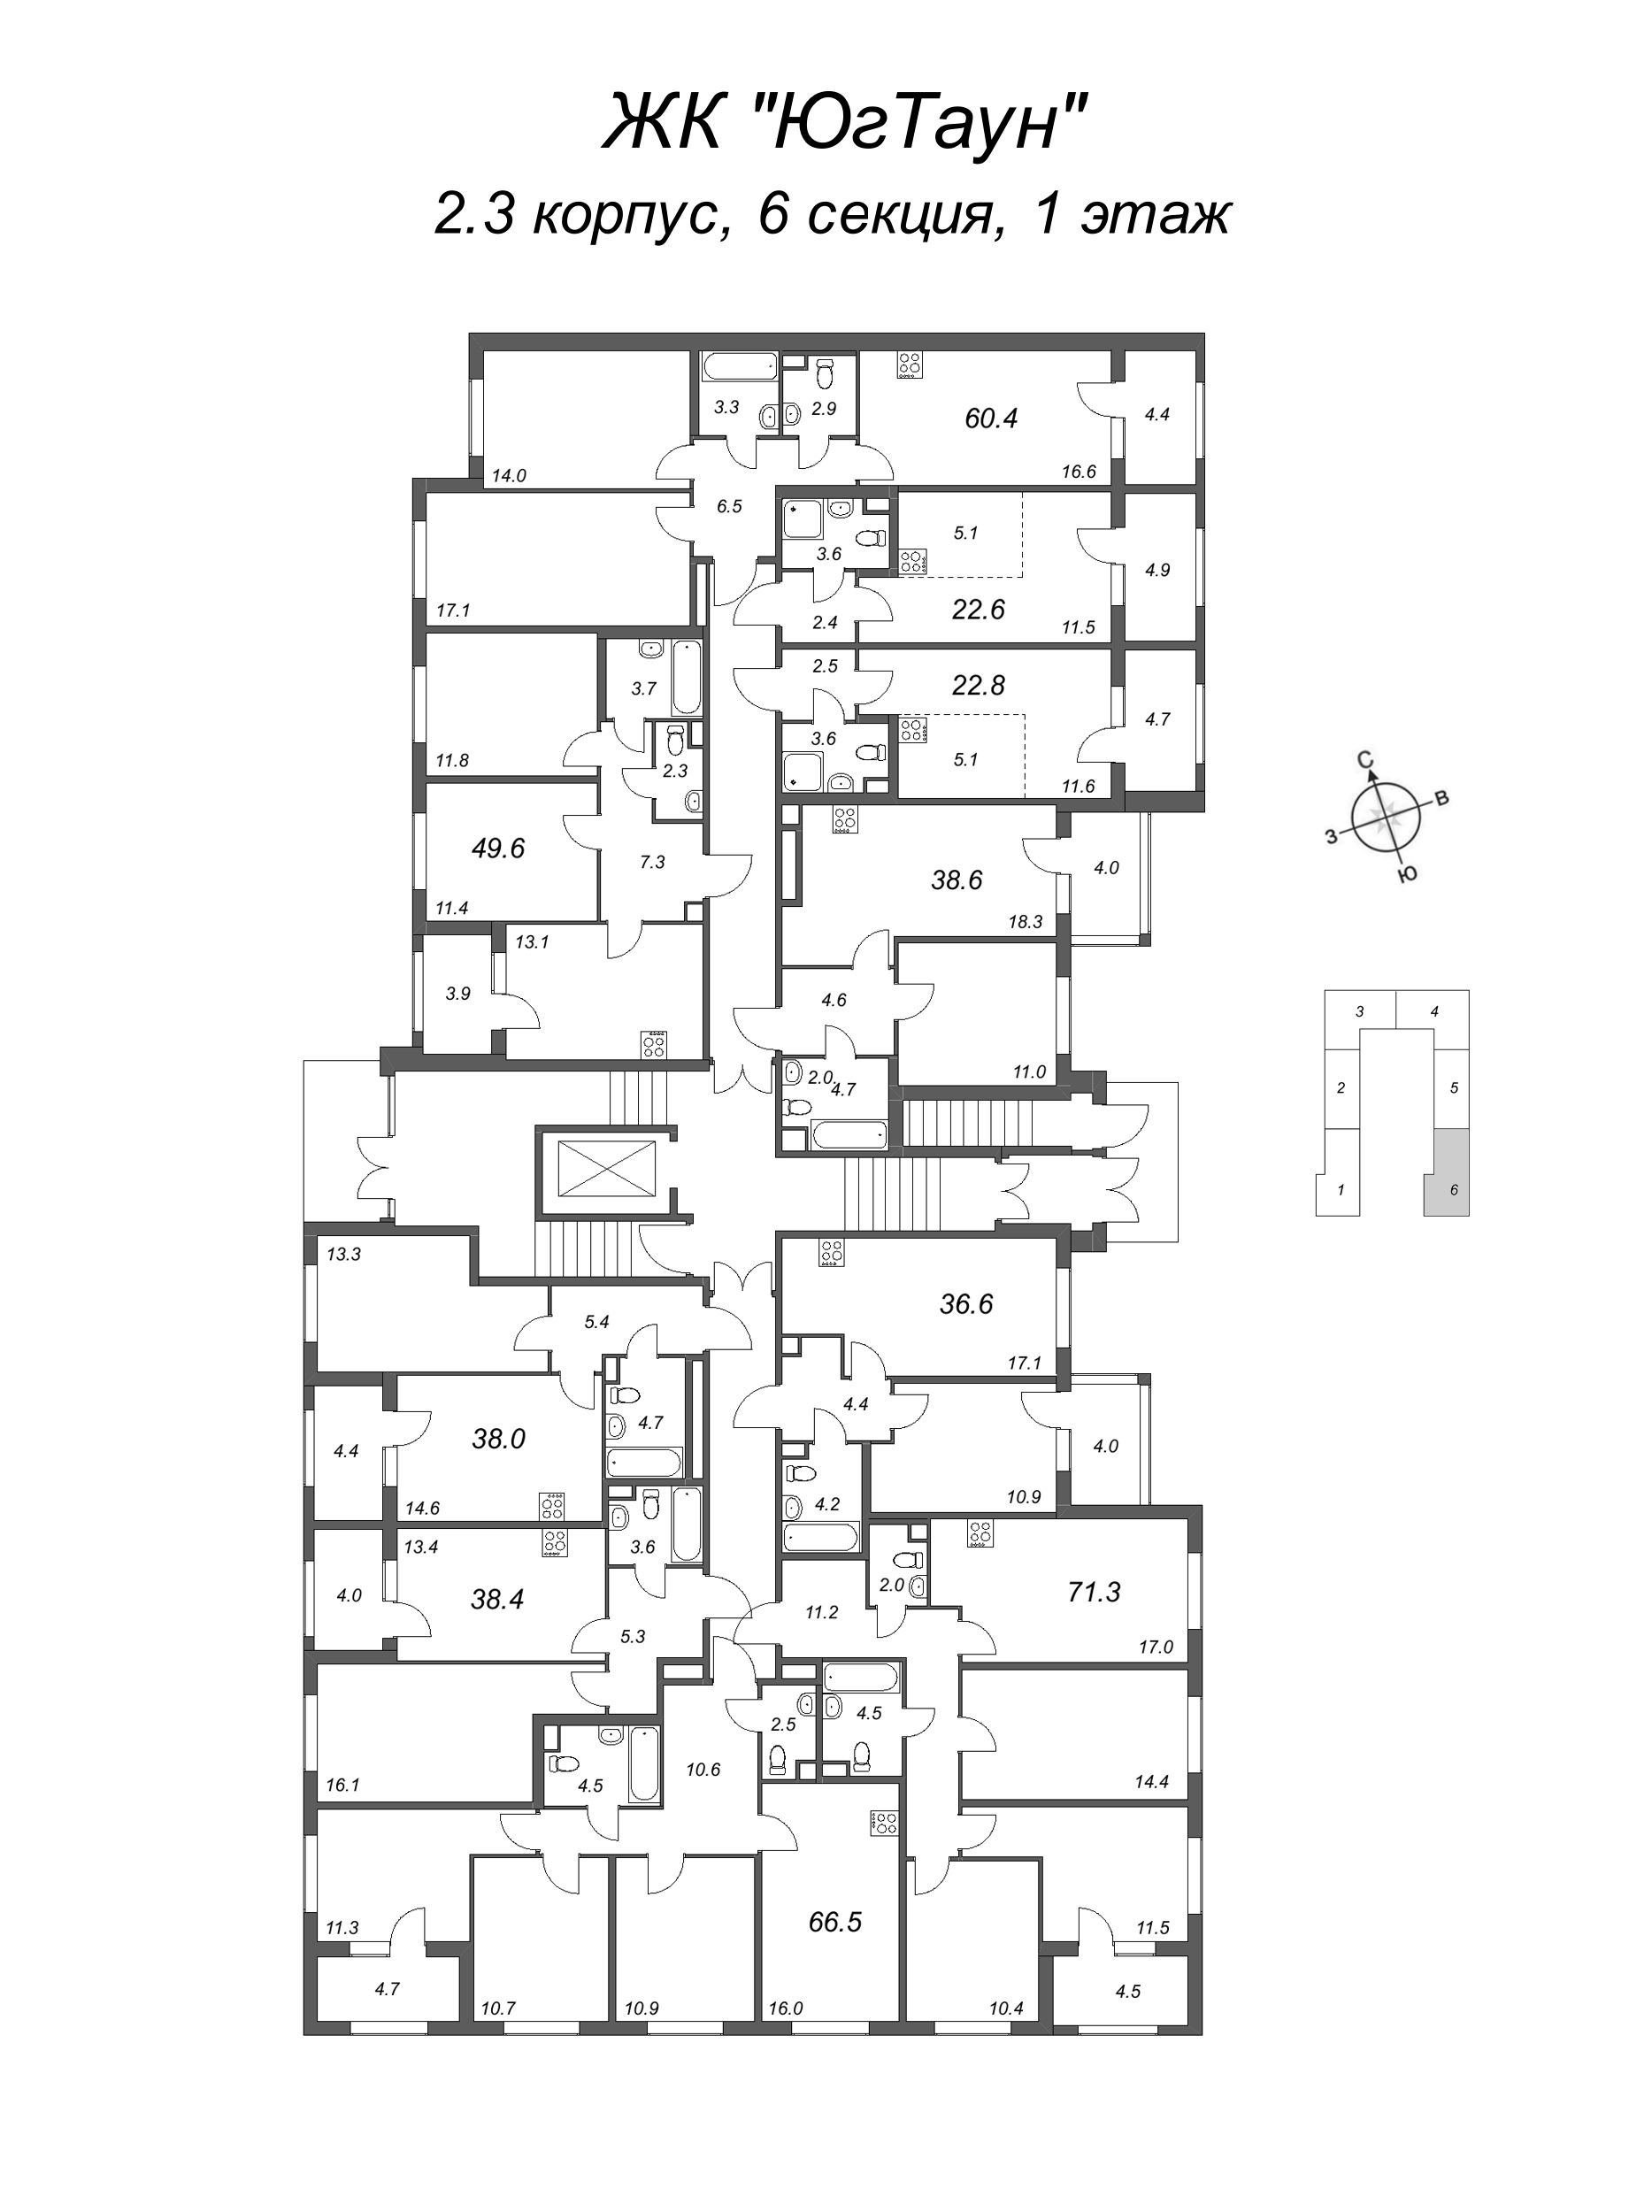 Квартира-студия, 22.6 м² в ЖК "ЮгТаун" - планировка этажа